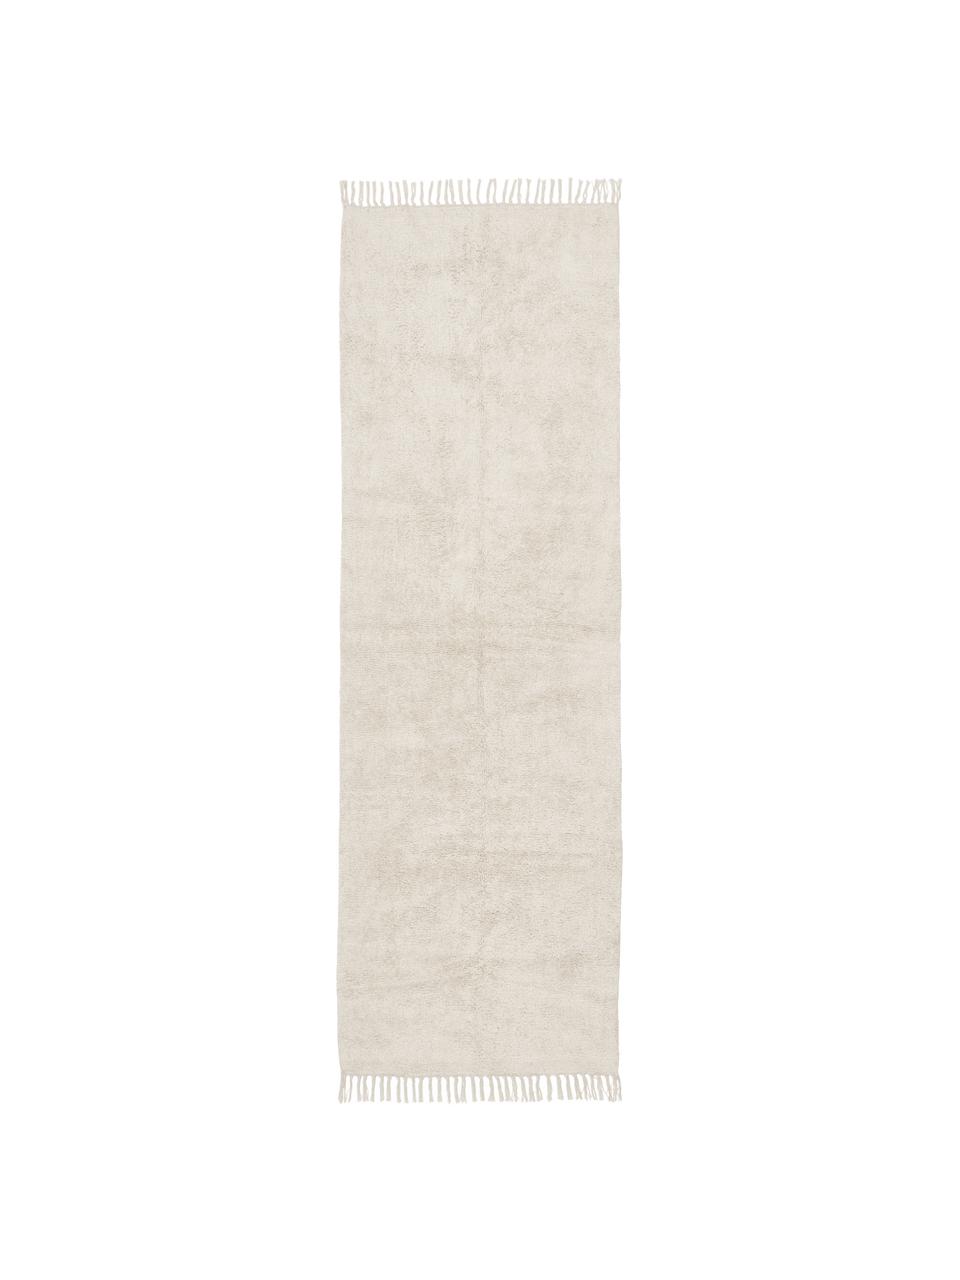 Katoenen loper Daya met franjes, handgetuft, Bovenzijde: 100 % katoen, Onderzijde: latex, Crèmekleurig, B 80 x L 250 cm